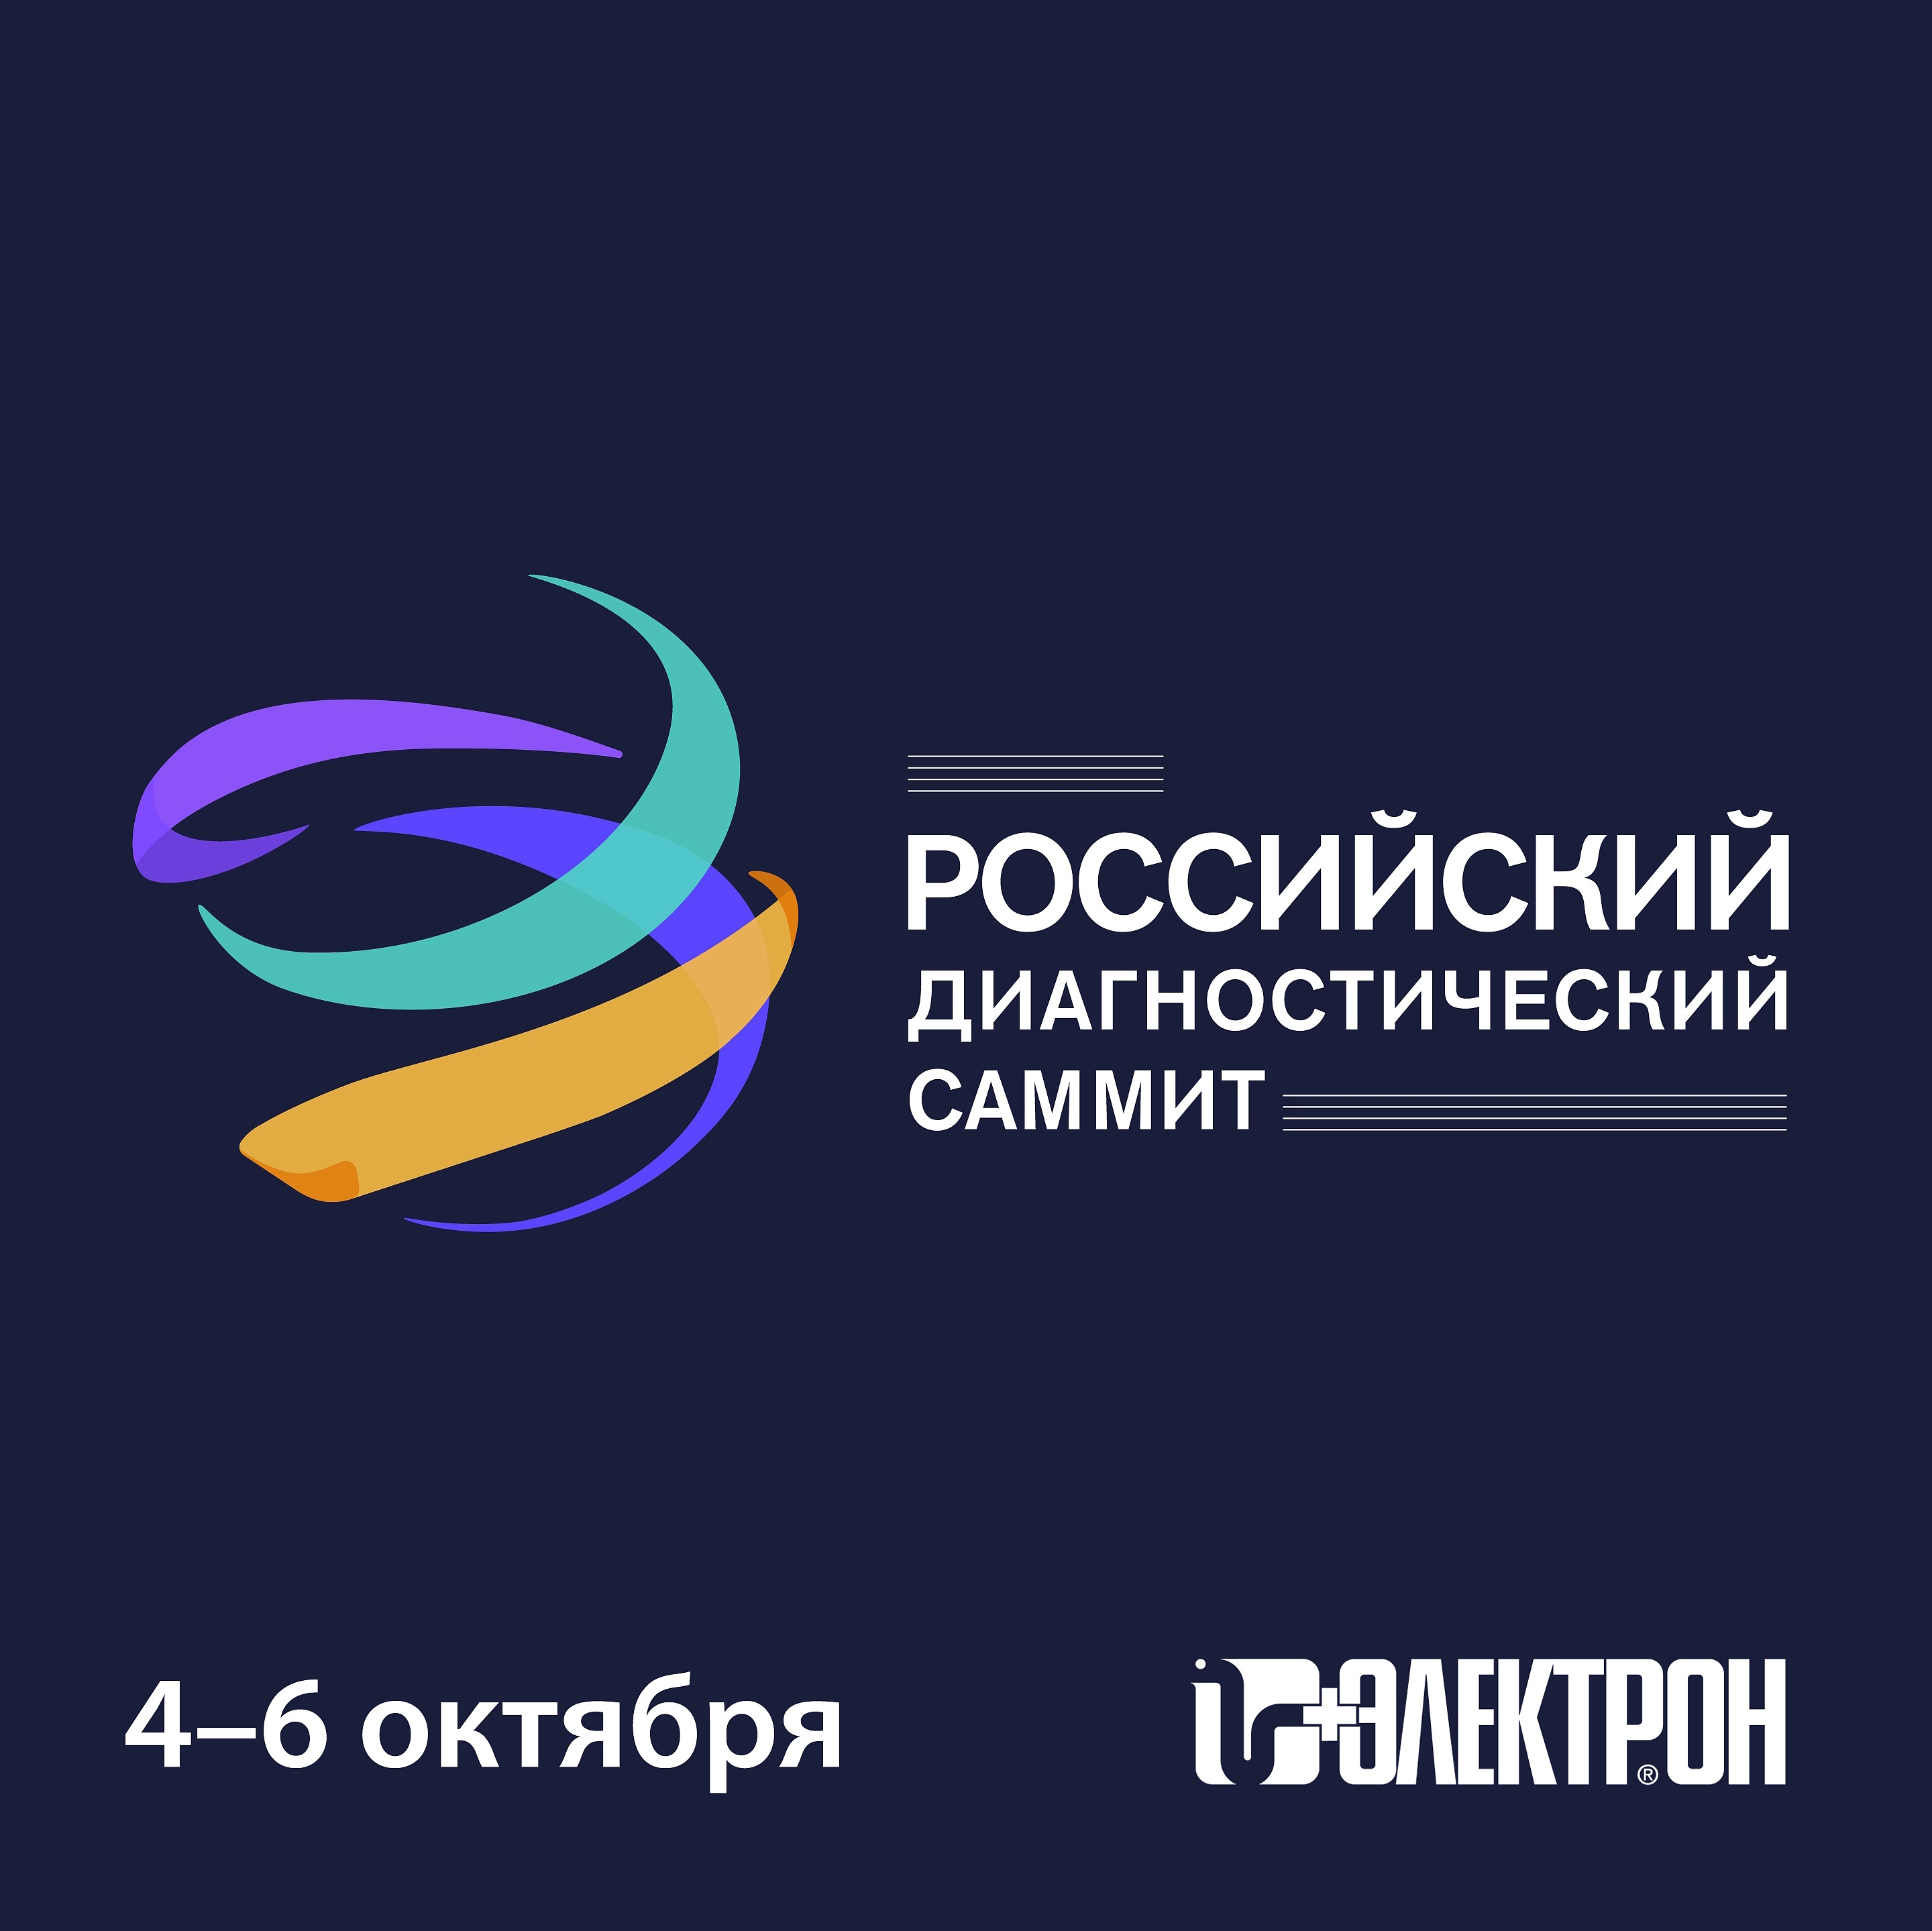 Приглашаем на «Российский диагностический саммит» в Москве